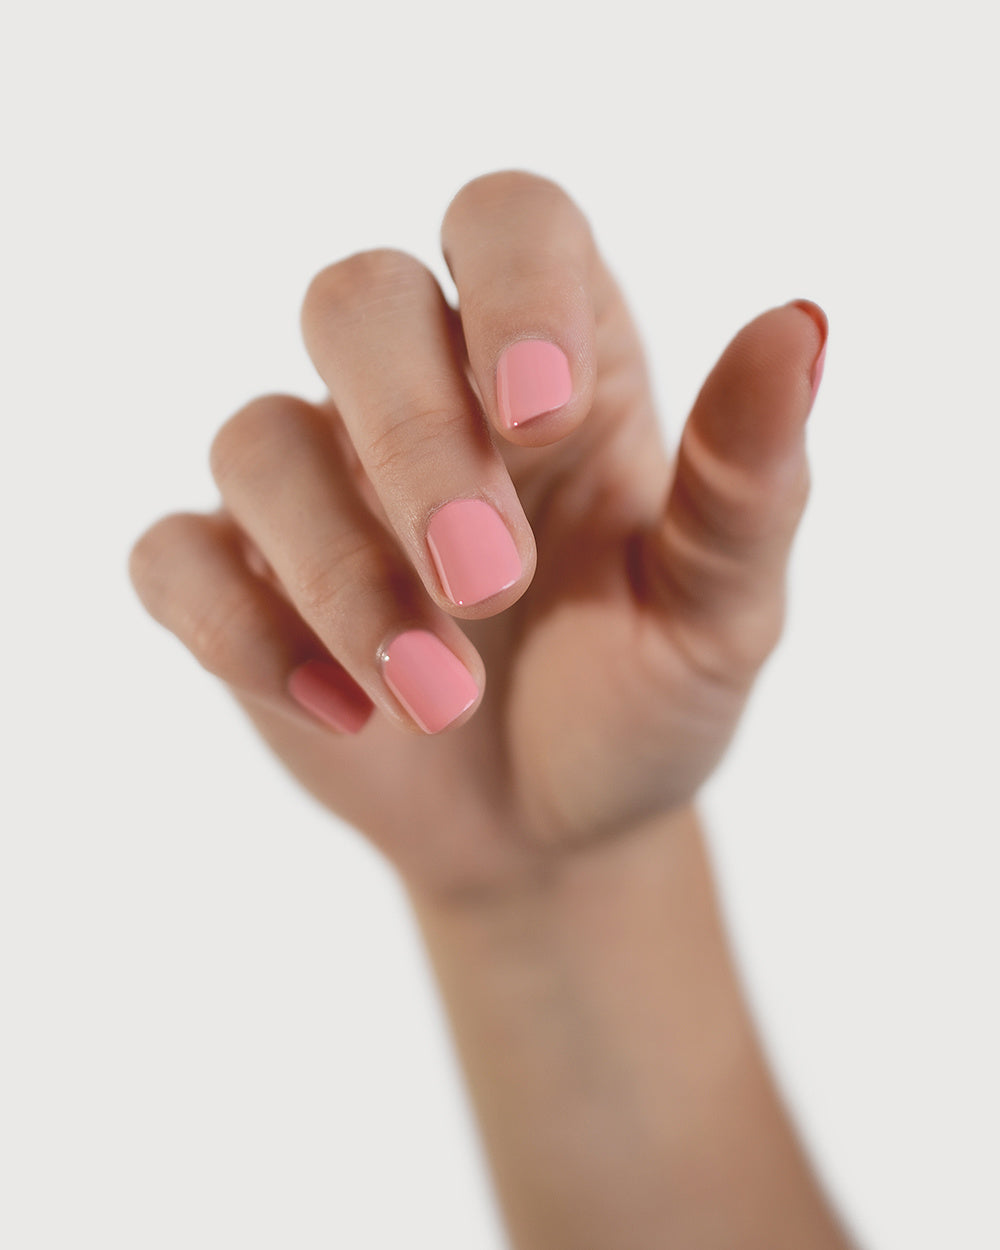 peachy pink nail polish hand swatch on fair skin tone